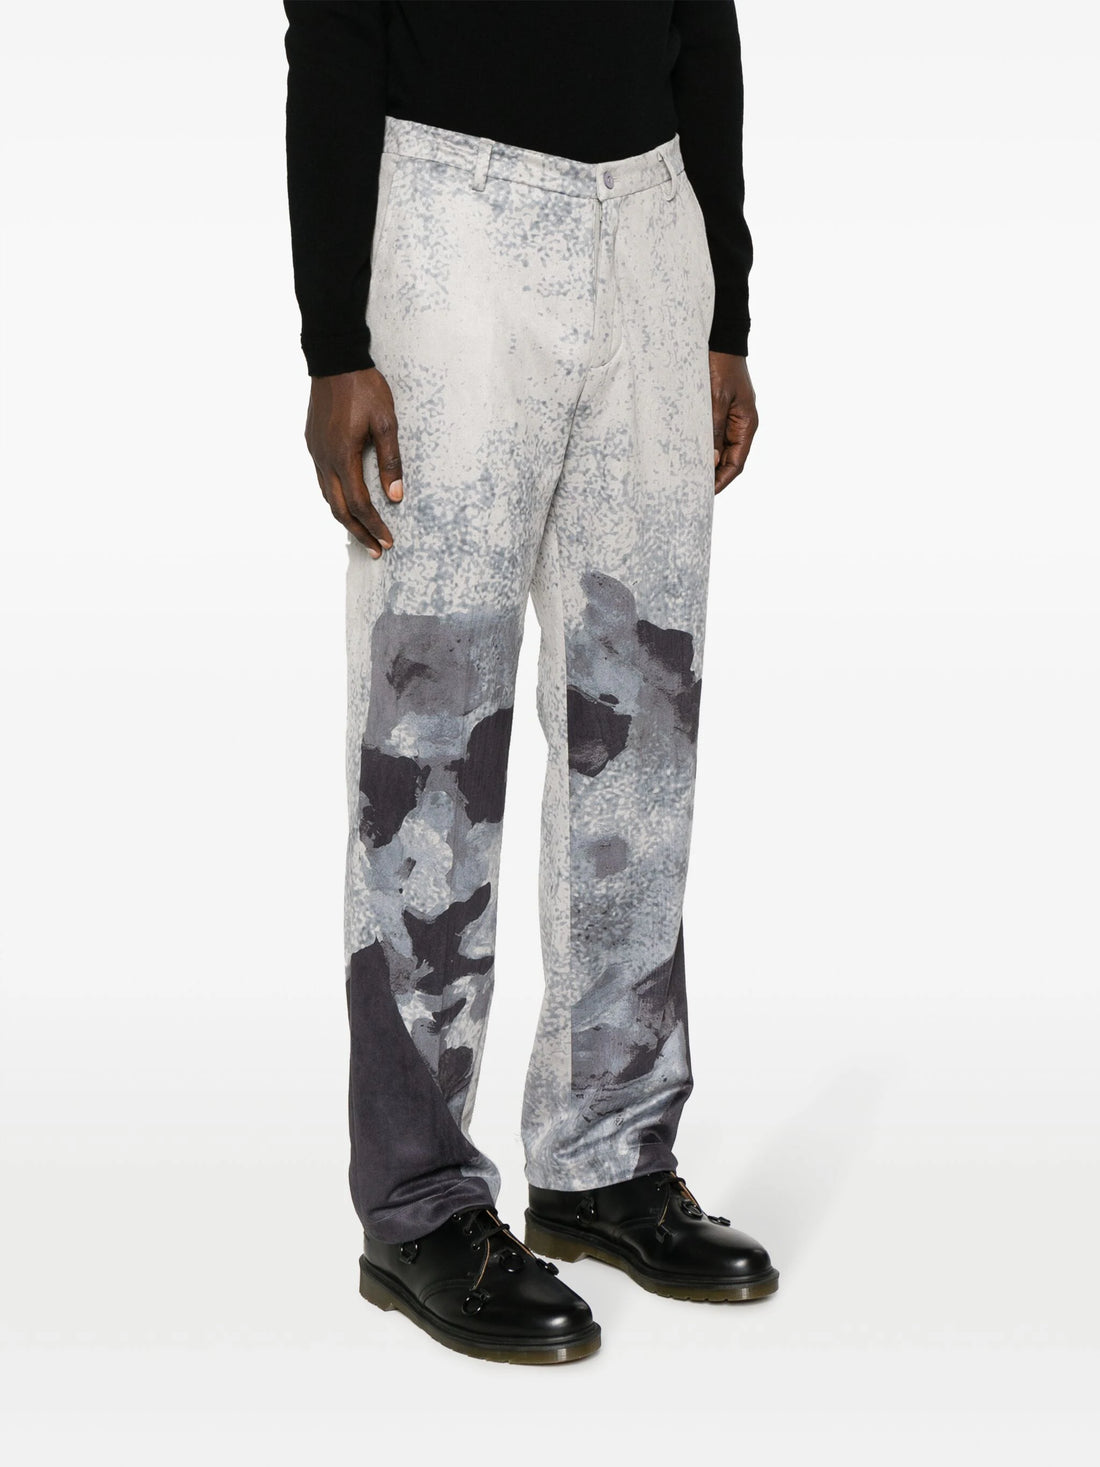 KIDSUPER Suede Portrait Graphic Print Suit Pants Black - MAISONDEFASHION.COM